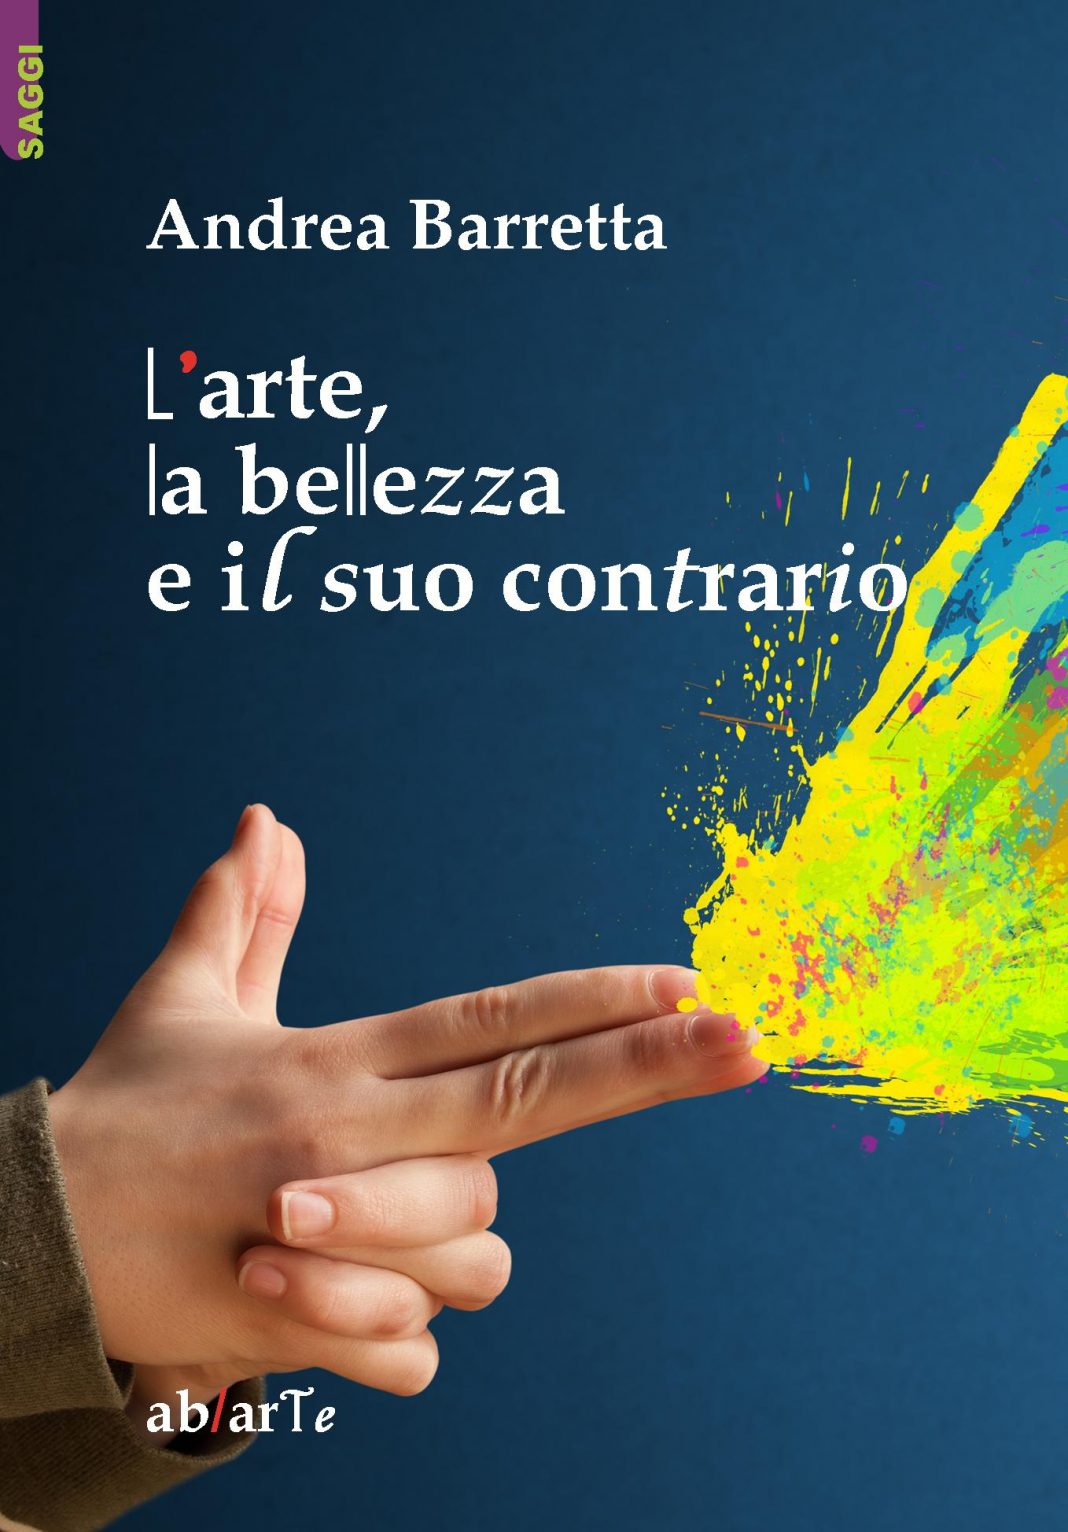 Andrea Barretta – L’arte, la bellezza e il suo contrariohttps://www.exibart.com/repository/media/eventi/2014/10/andrea-barretta-8211-l’arte-la-bellezza-e-il-suo-contrario-1068x1532.jpg